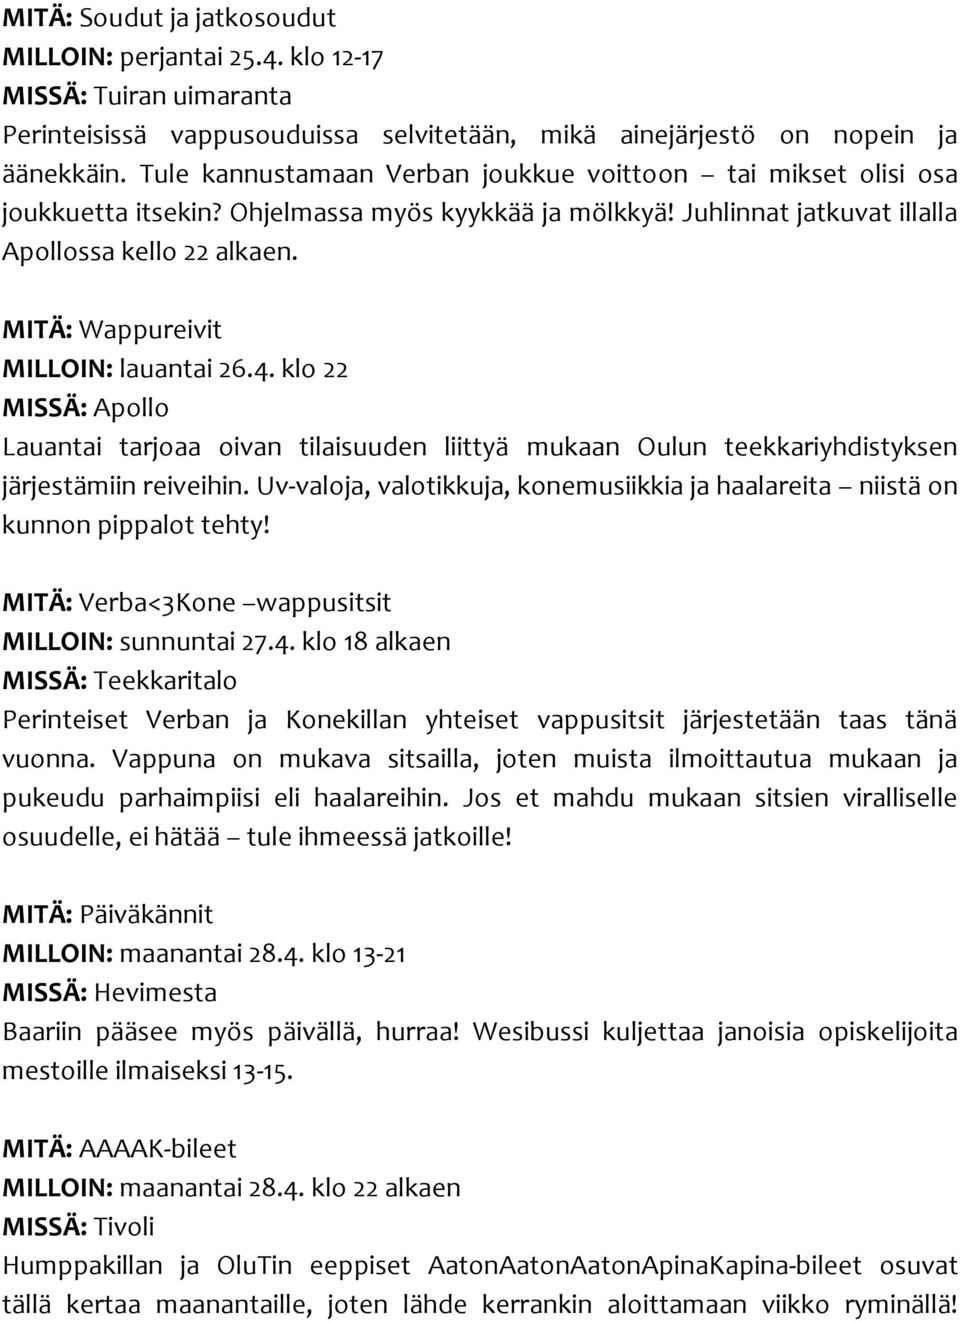 MITÄ: Wappureivit MILLOIN: lauantai 26.4. klo 22 MISSÄ: Apollo Lauantai tarjoaa oivan tilaisuuden liittyä mukaan Oulun teekkariyhdistyksen järjestämiin reiveihin.